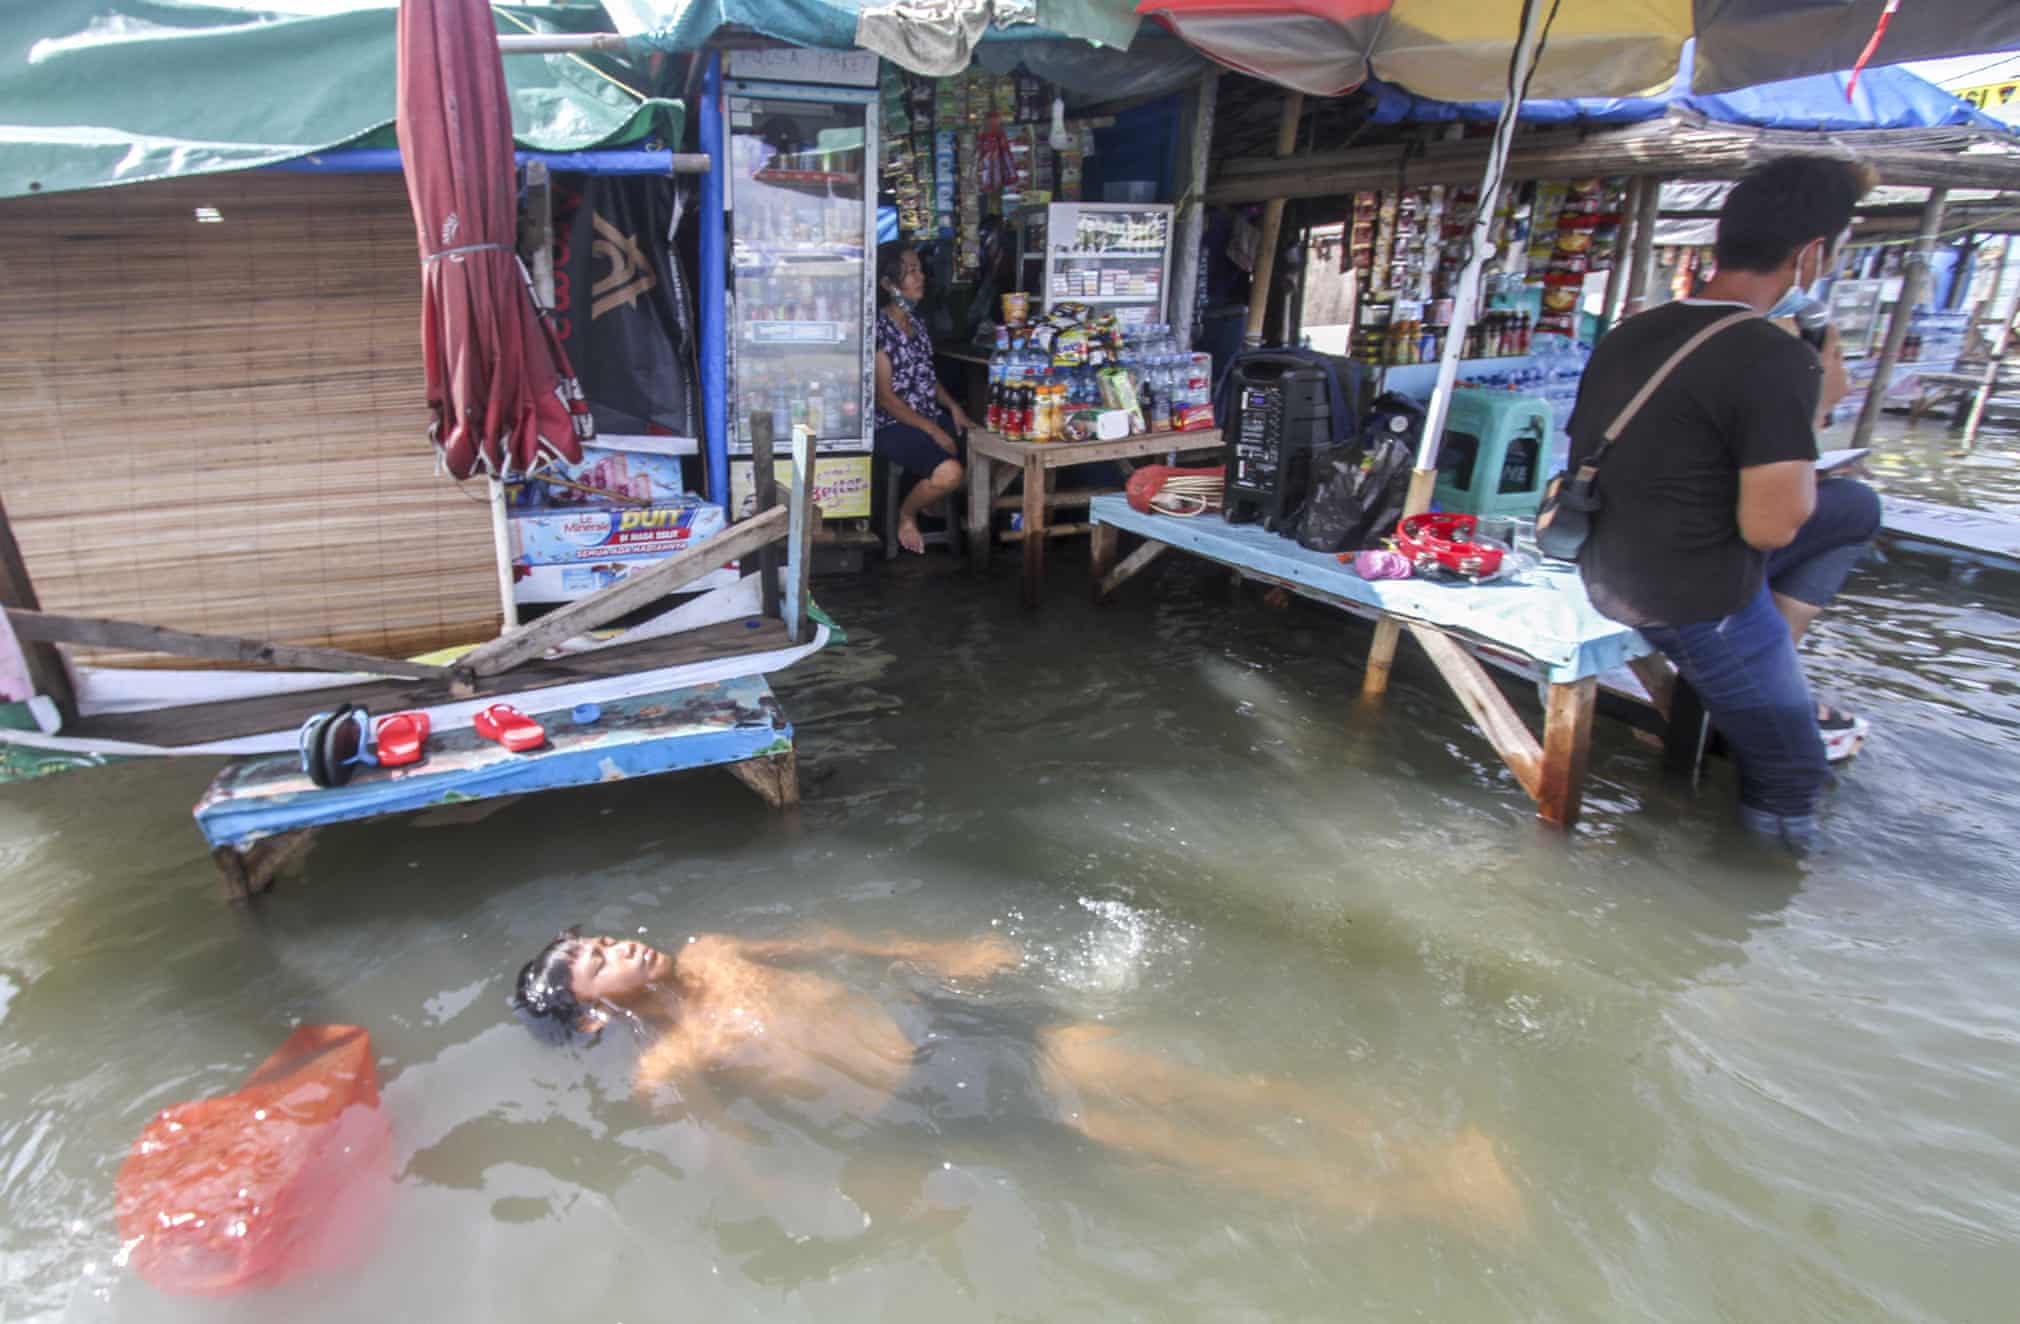 شنای آسوده در سیل جاکارتایِ اندونزی + عکس